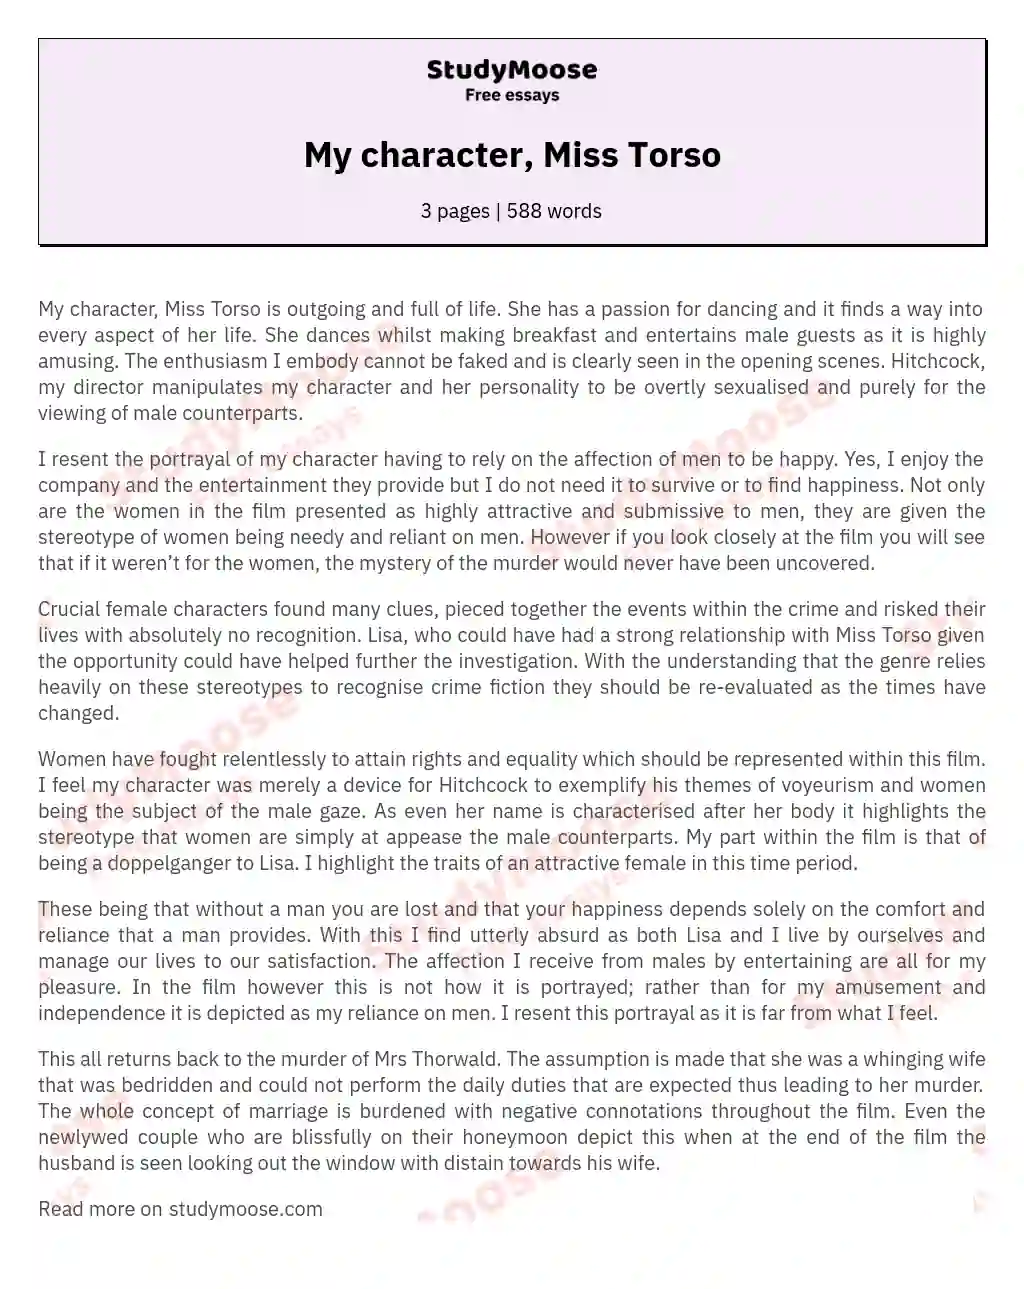 My character, Miss Torso essay